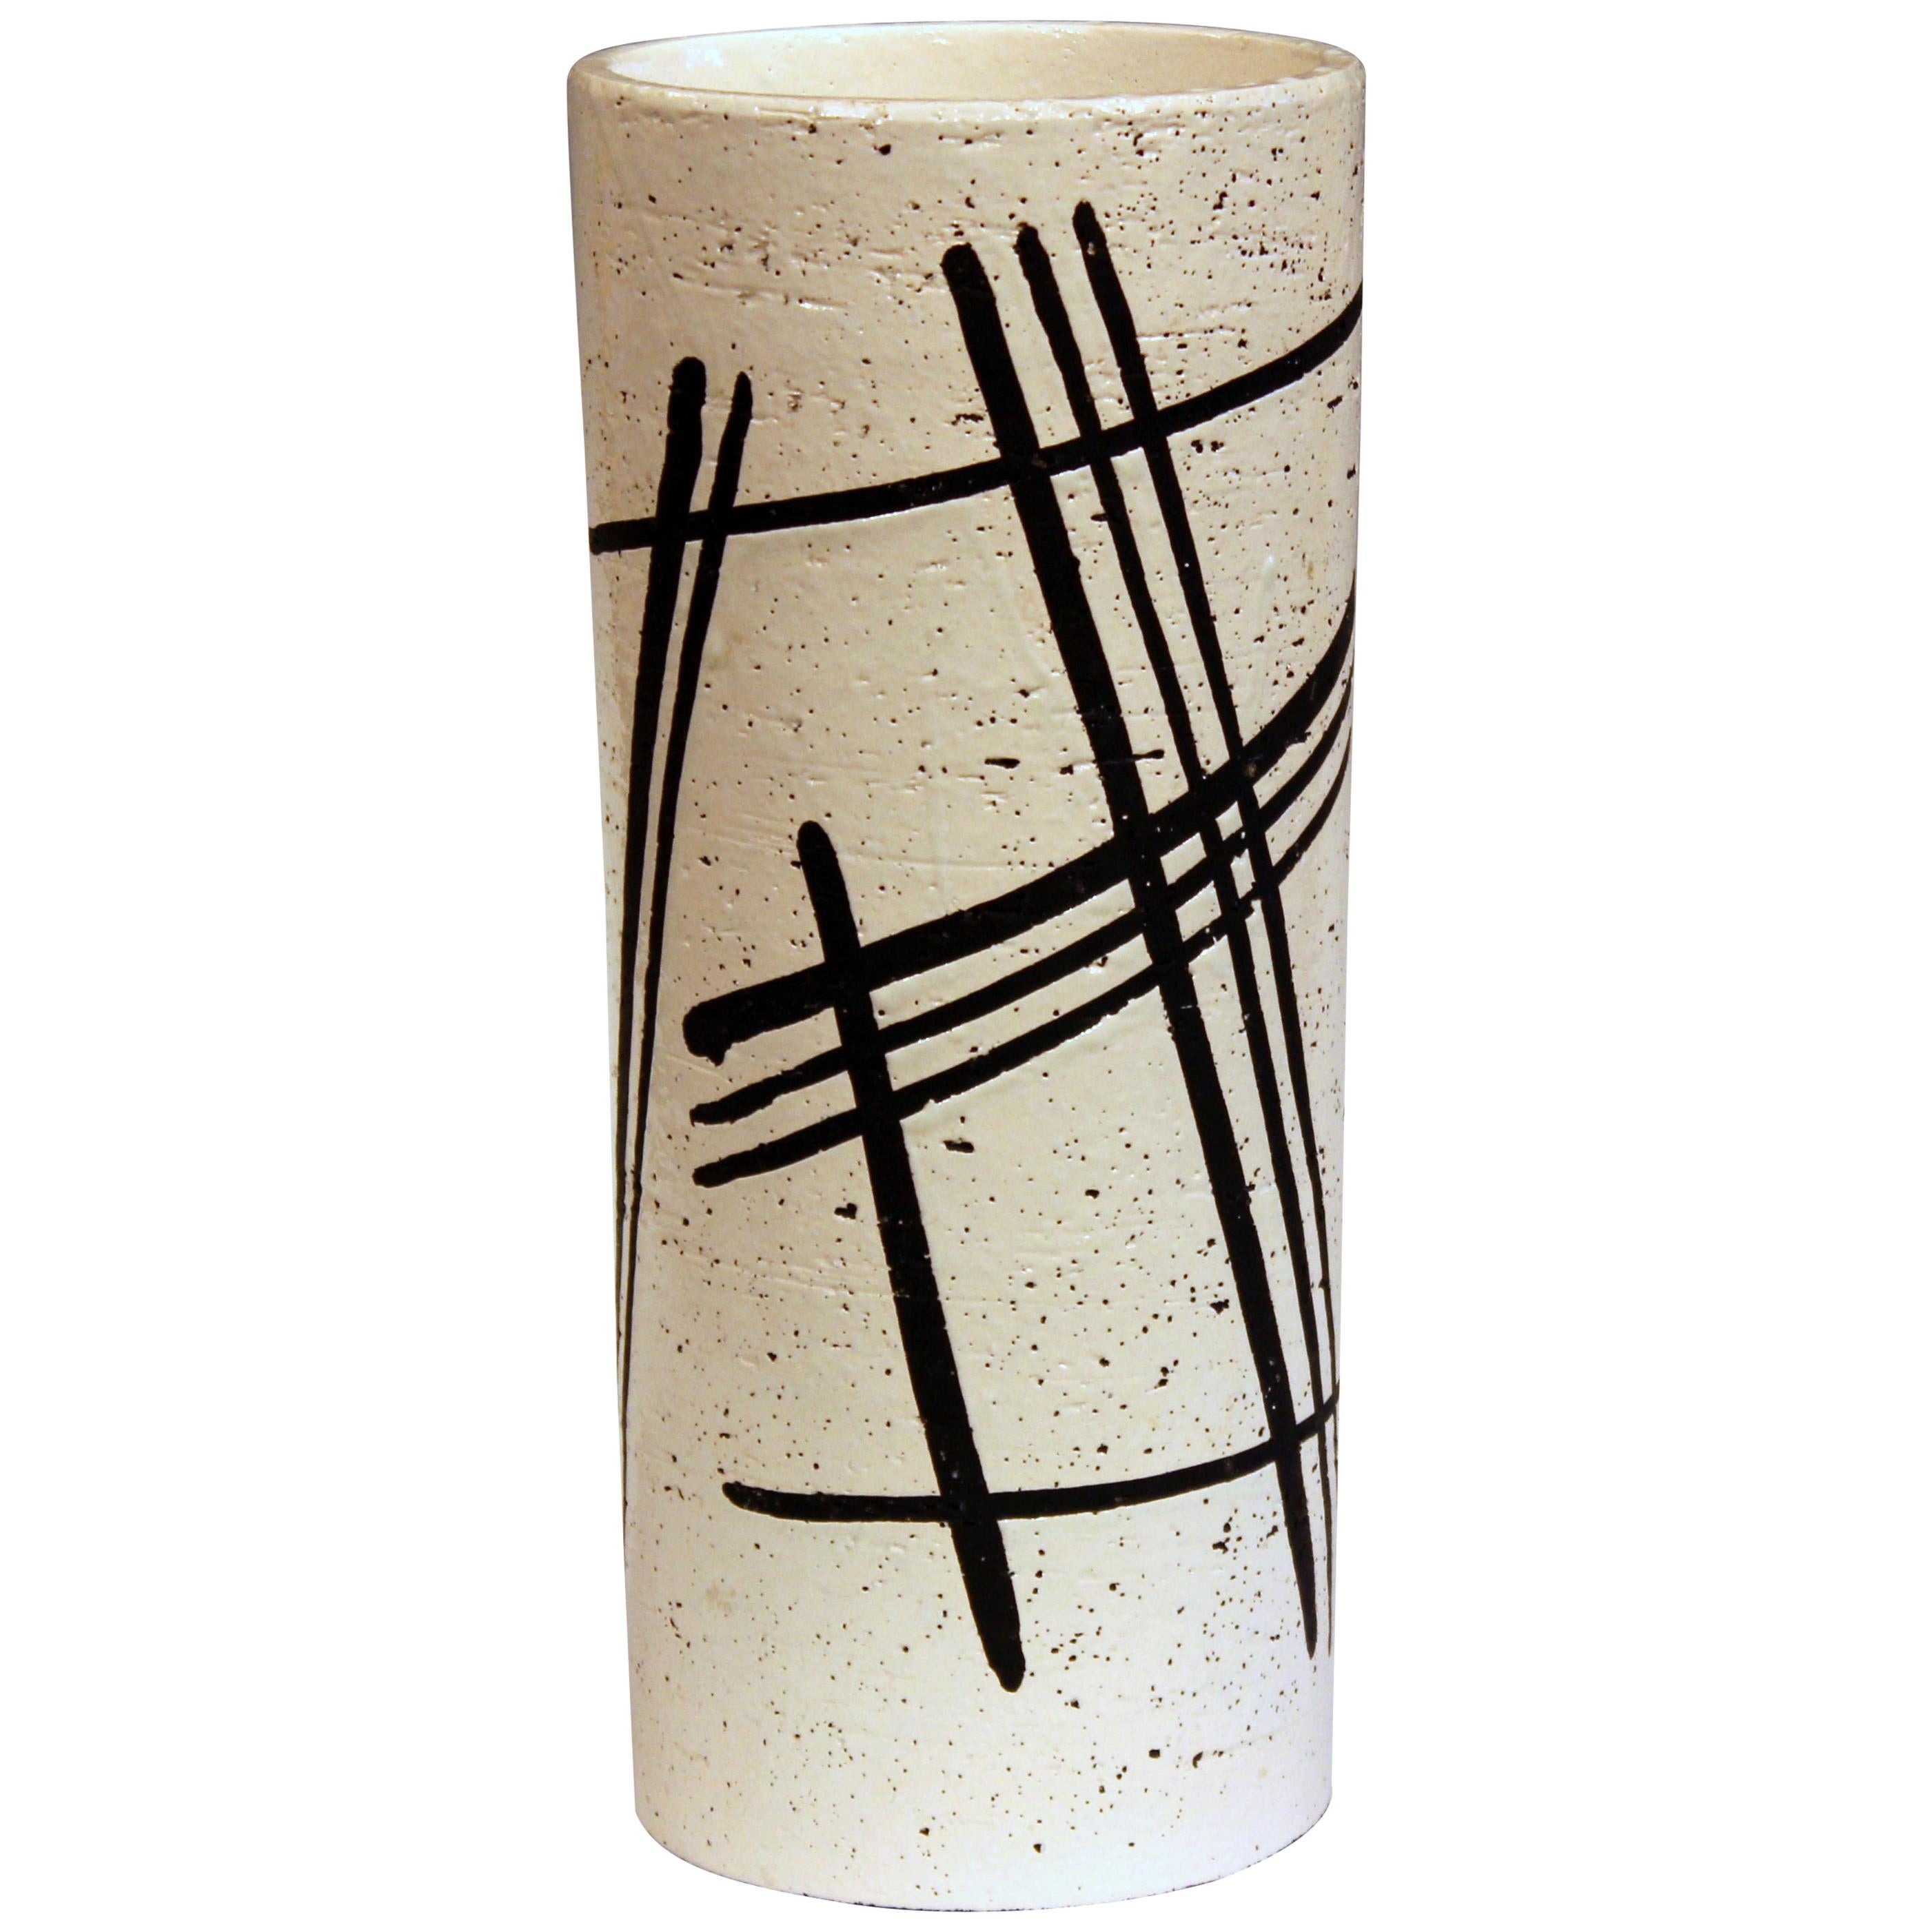 Bitossi Italian Pottery Raymor Rosenthal-Netter Vase Vintage Londi Black & White